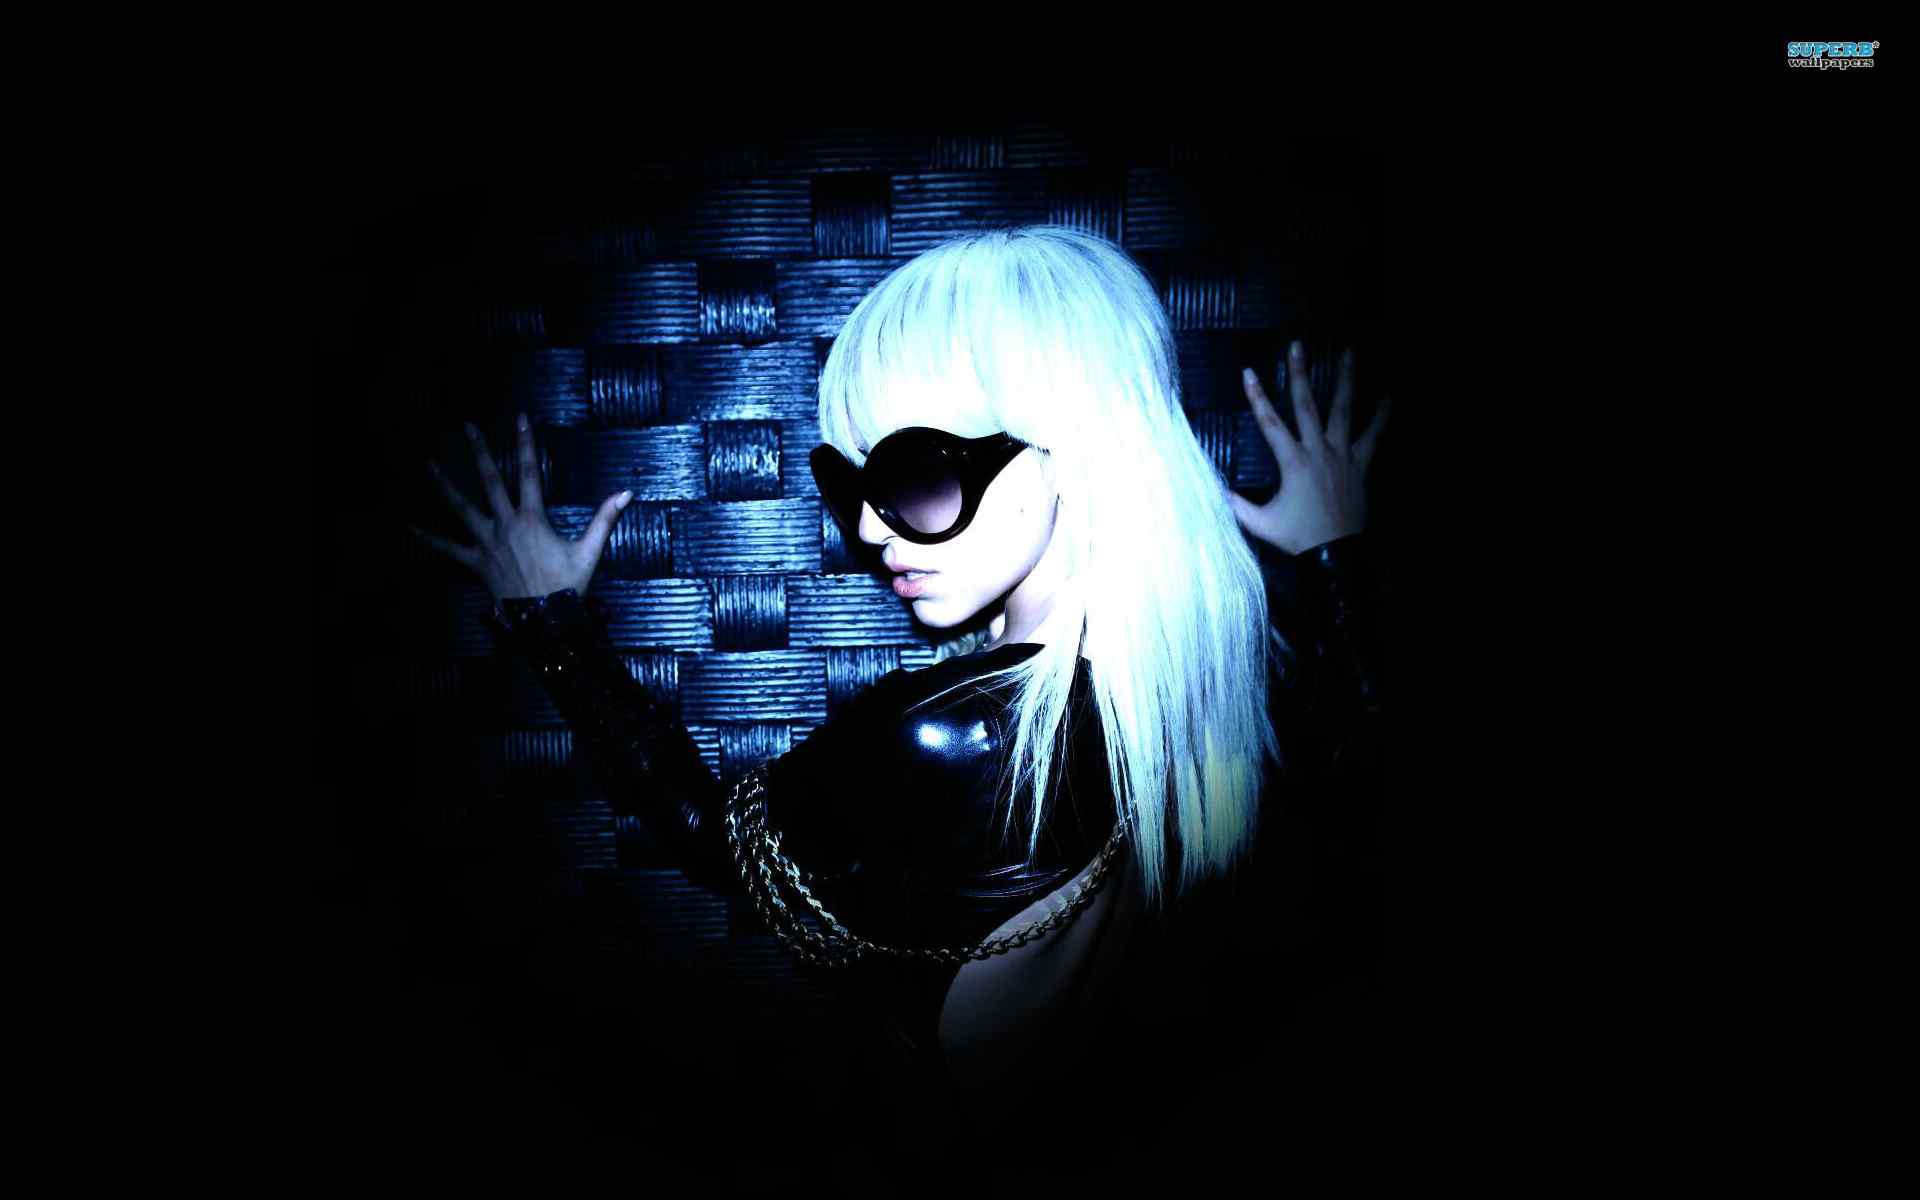 Lady GaGa 壁纸 - 嘎嘎小姐 壁纸 (34677784) - 潮流粉丝俱乐部